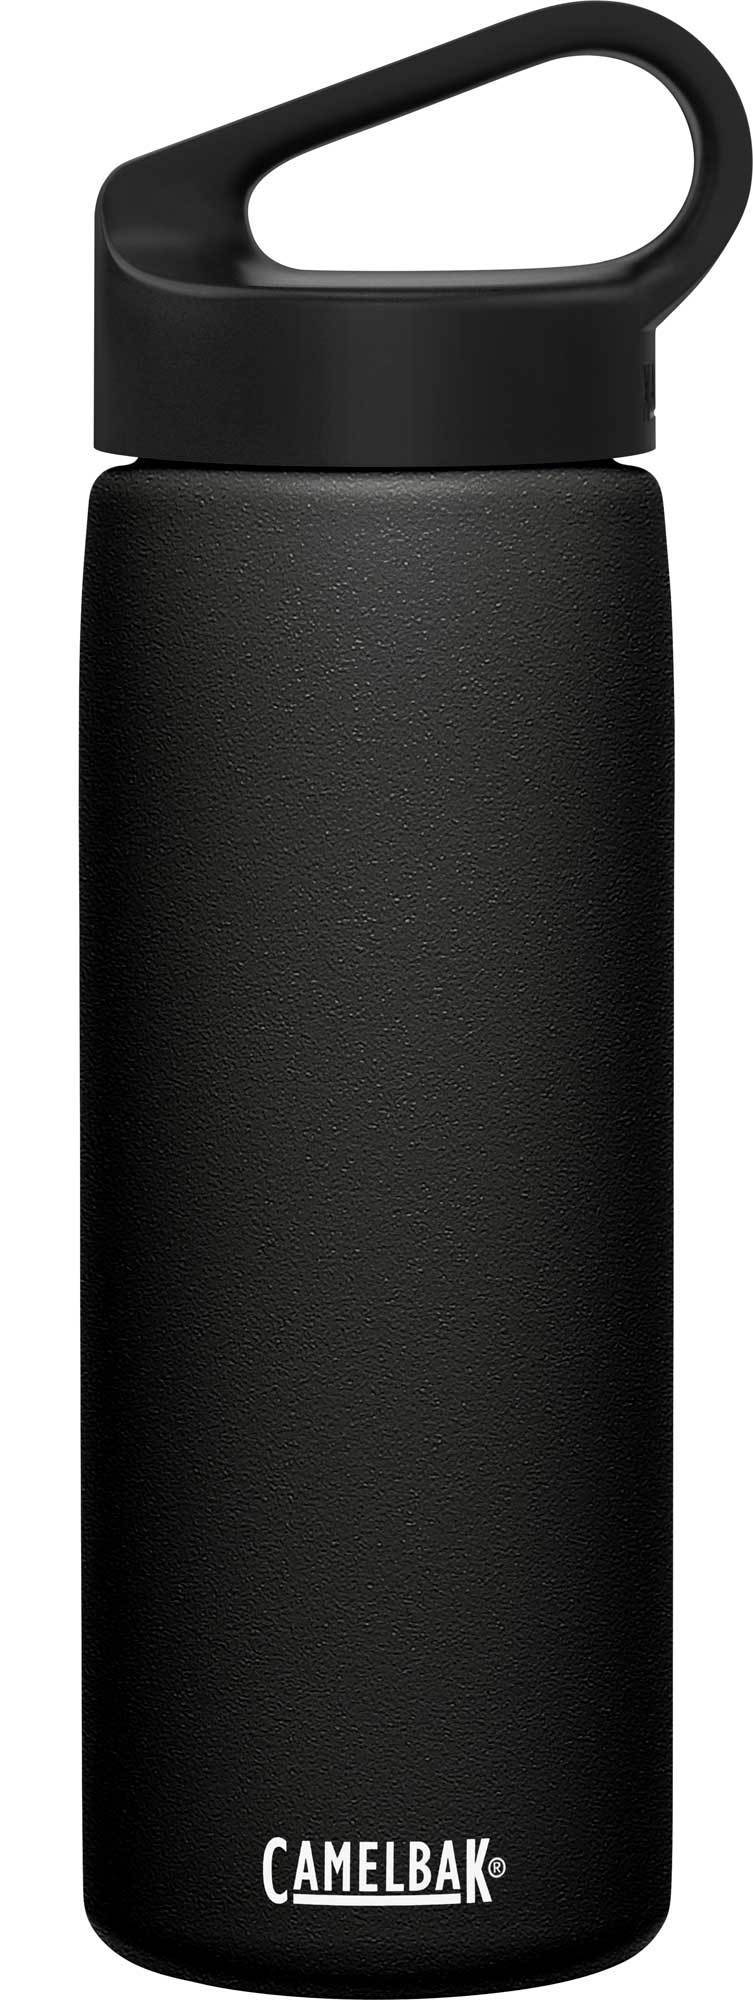 Термос-бутылка CamelBak Carry Cap (0,6 литра), черная